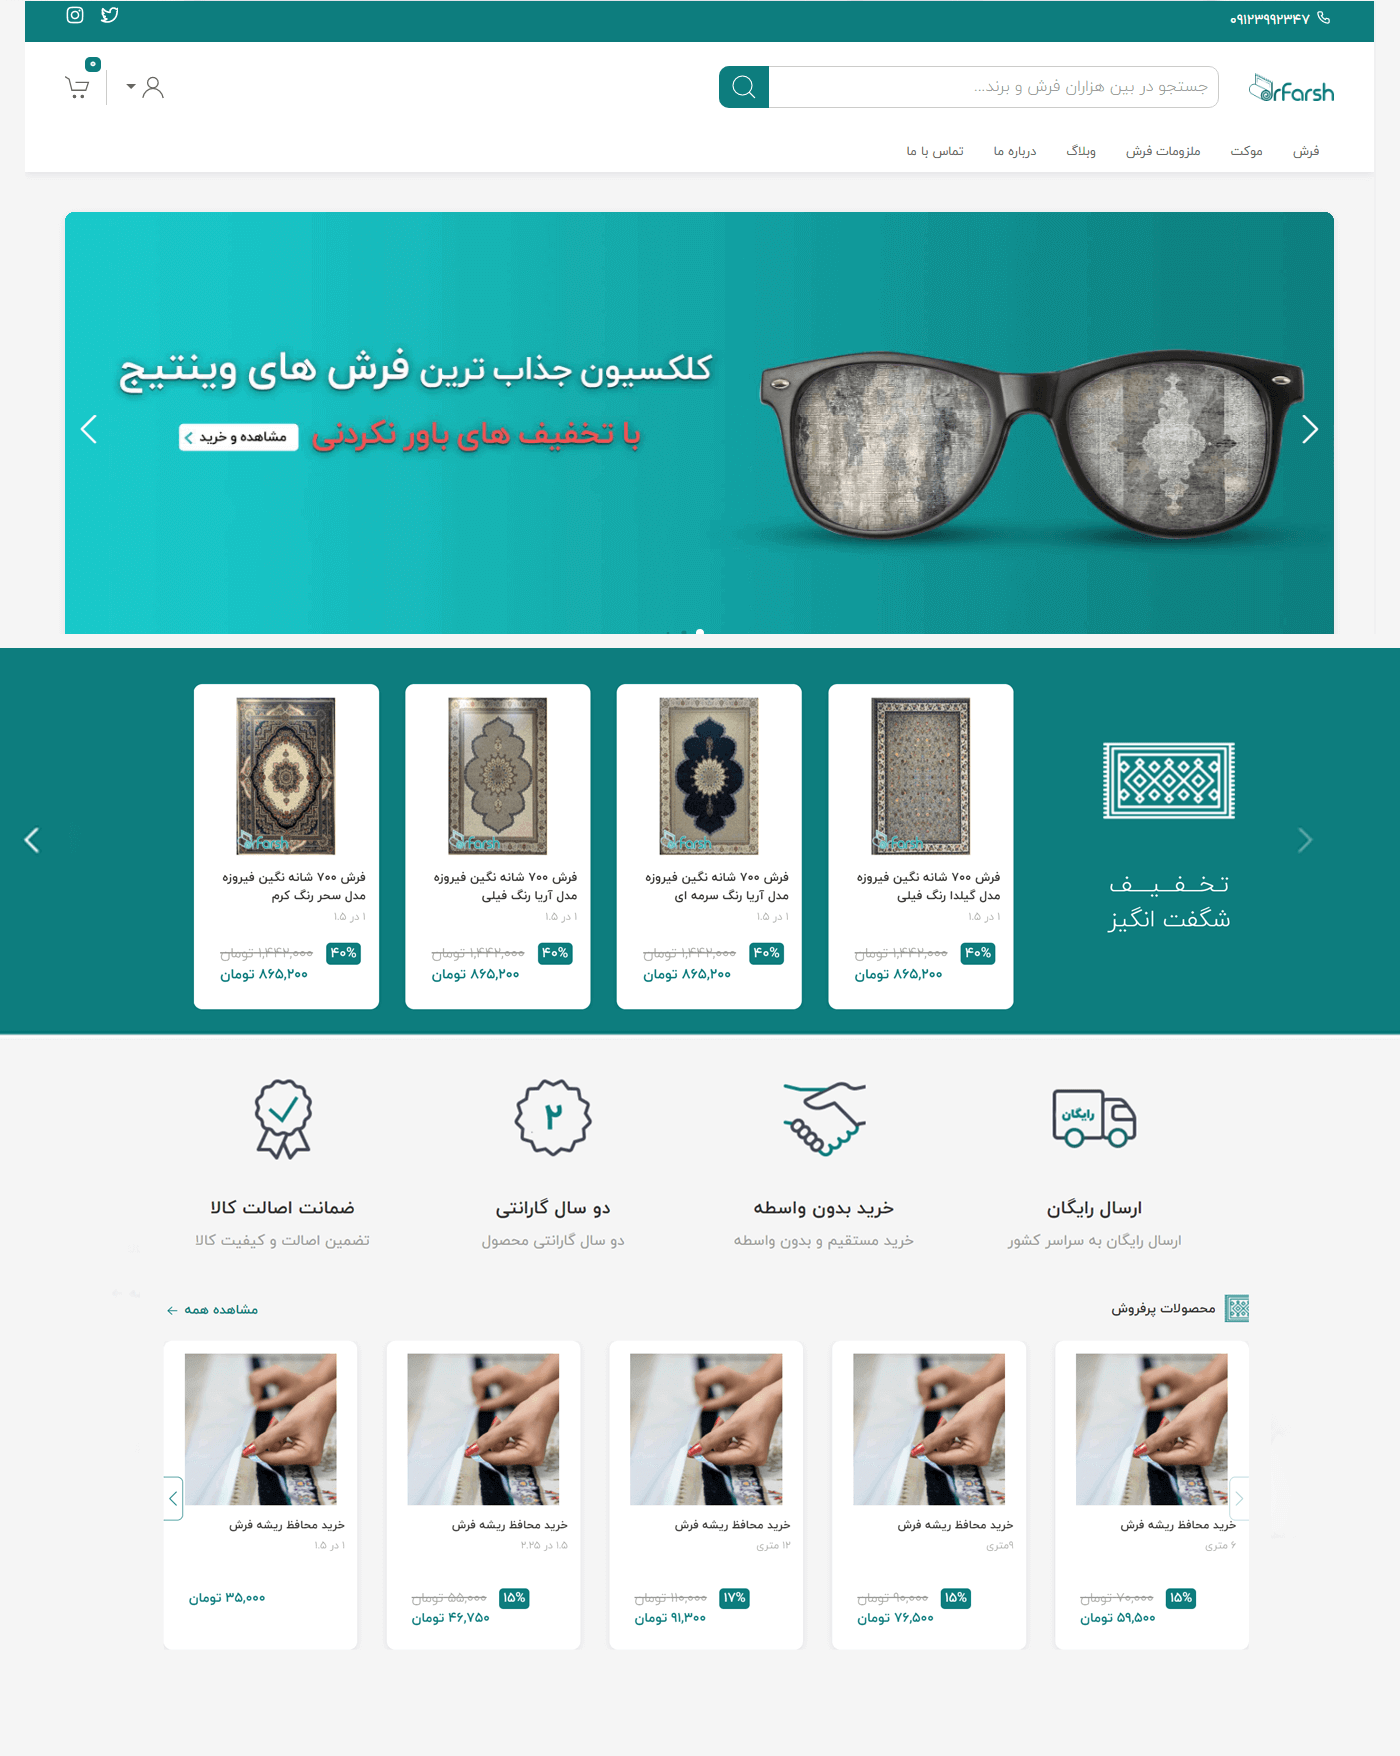 فیکا - طراحی UI و UX - طراحی UI |سایت فروشگاه آنلاین فرش دکتر فرش 2 - تصویر گالری